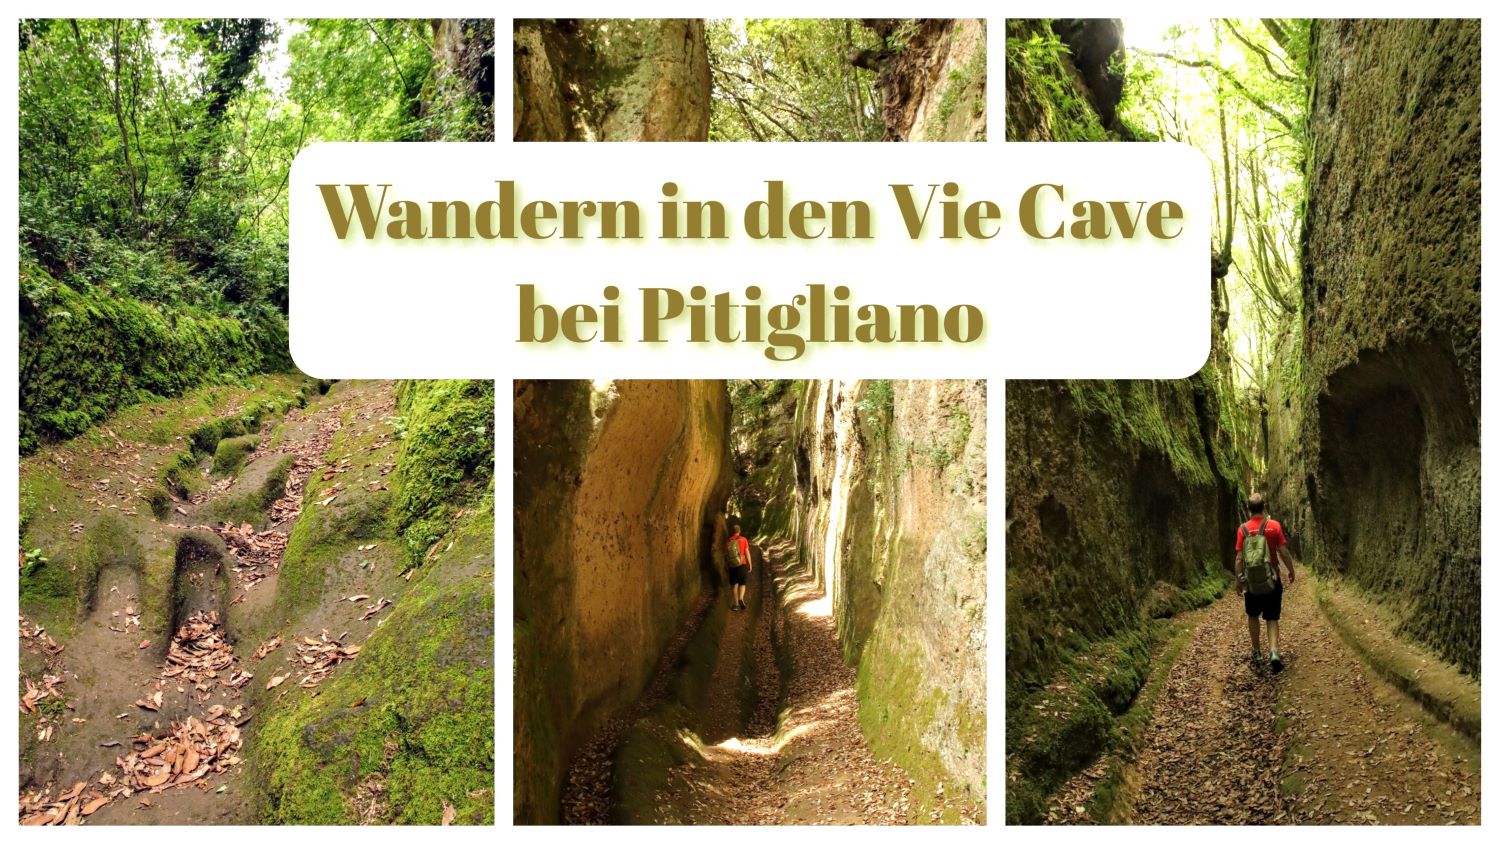 Cover Vie Cave Pitigliano Wandern